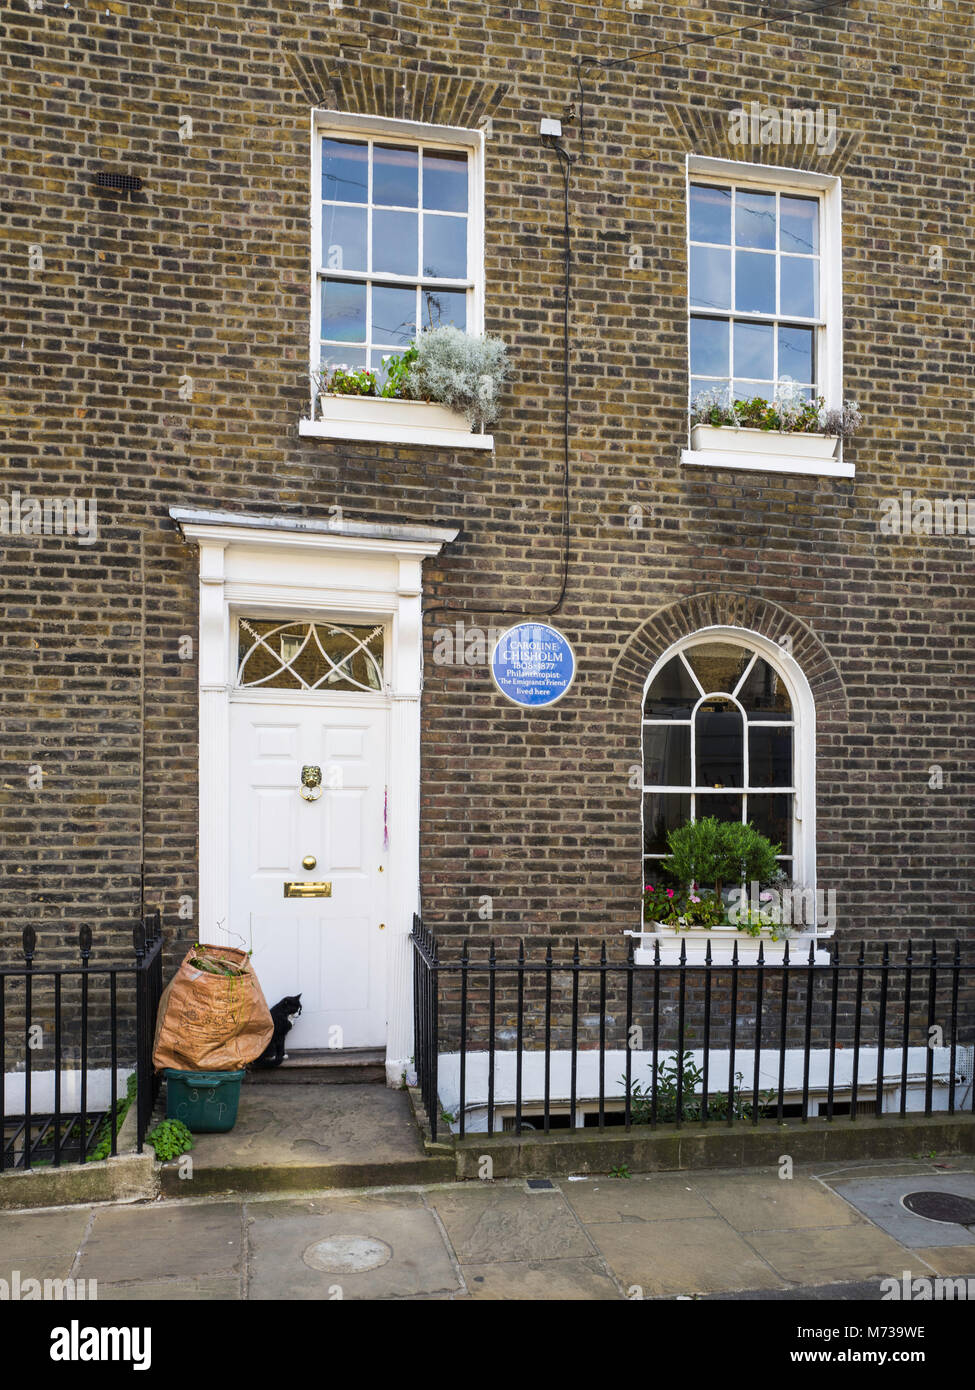 Eine blaue Plakette markiert das Haus in Charlton, London, ehemaliges Haus des 19. Jahrhunderts Englisch humanitäre und Philanthrop, Caroline Chisholm. Stockfoto